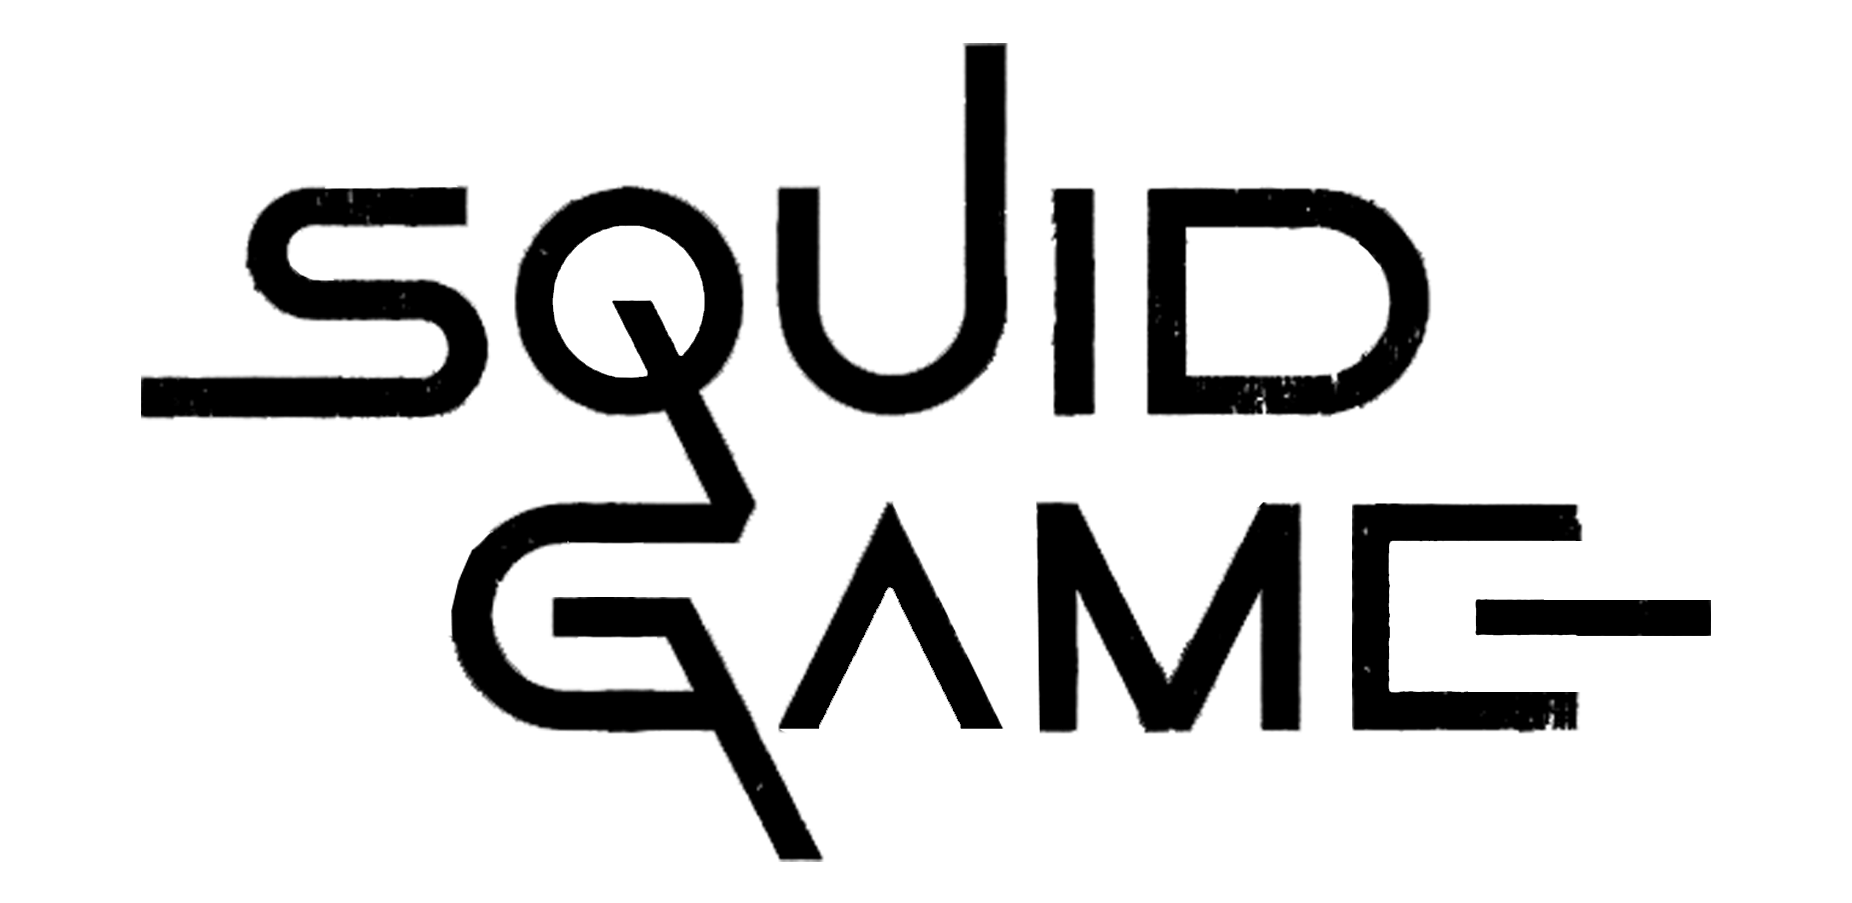 لعبة الحبار الأسود logo PNG